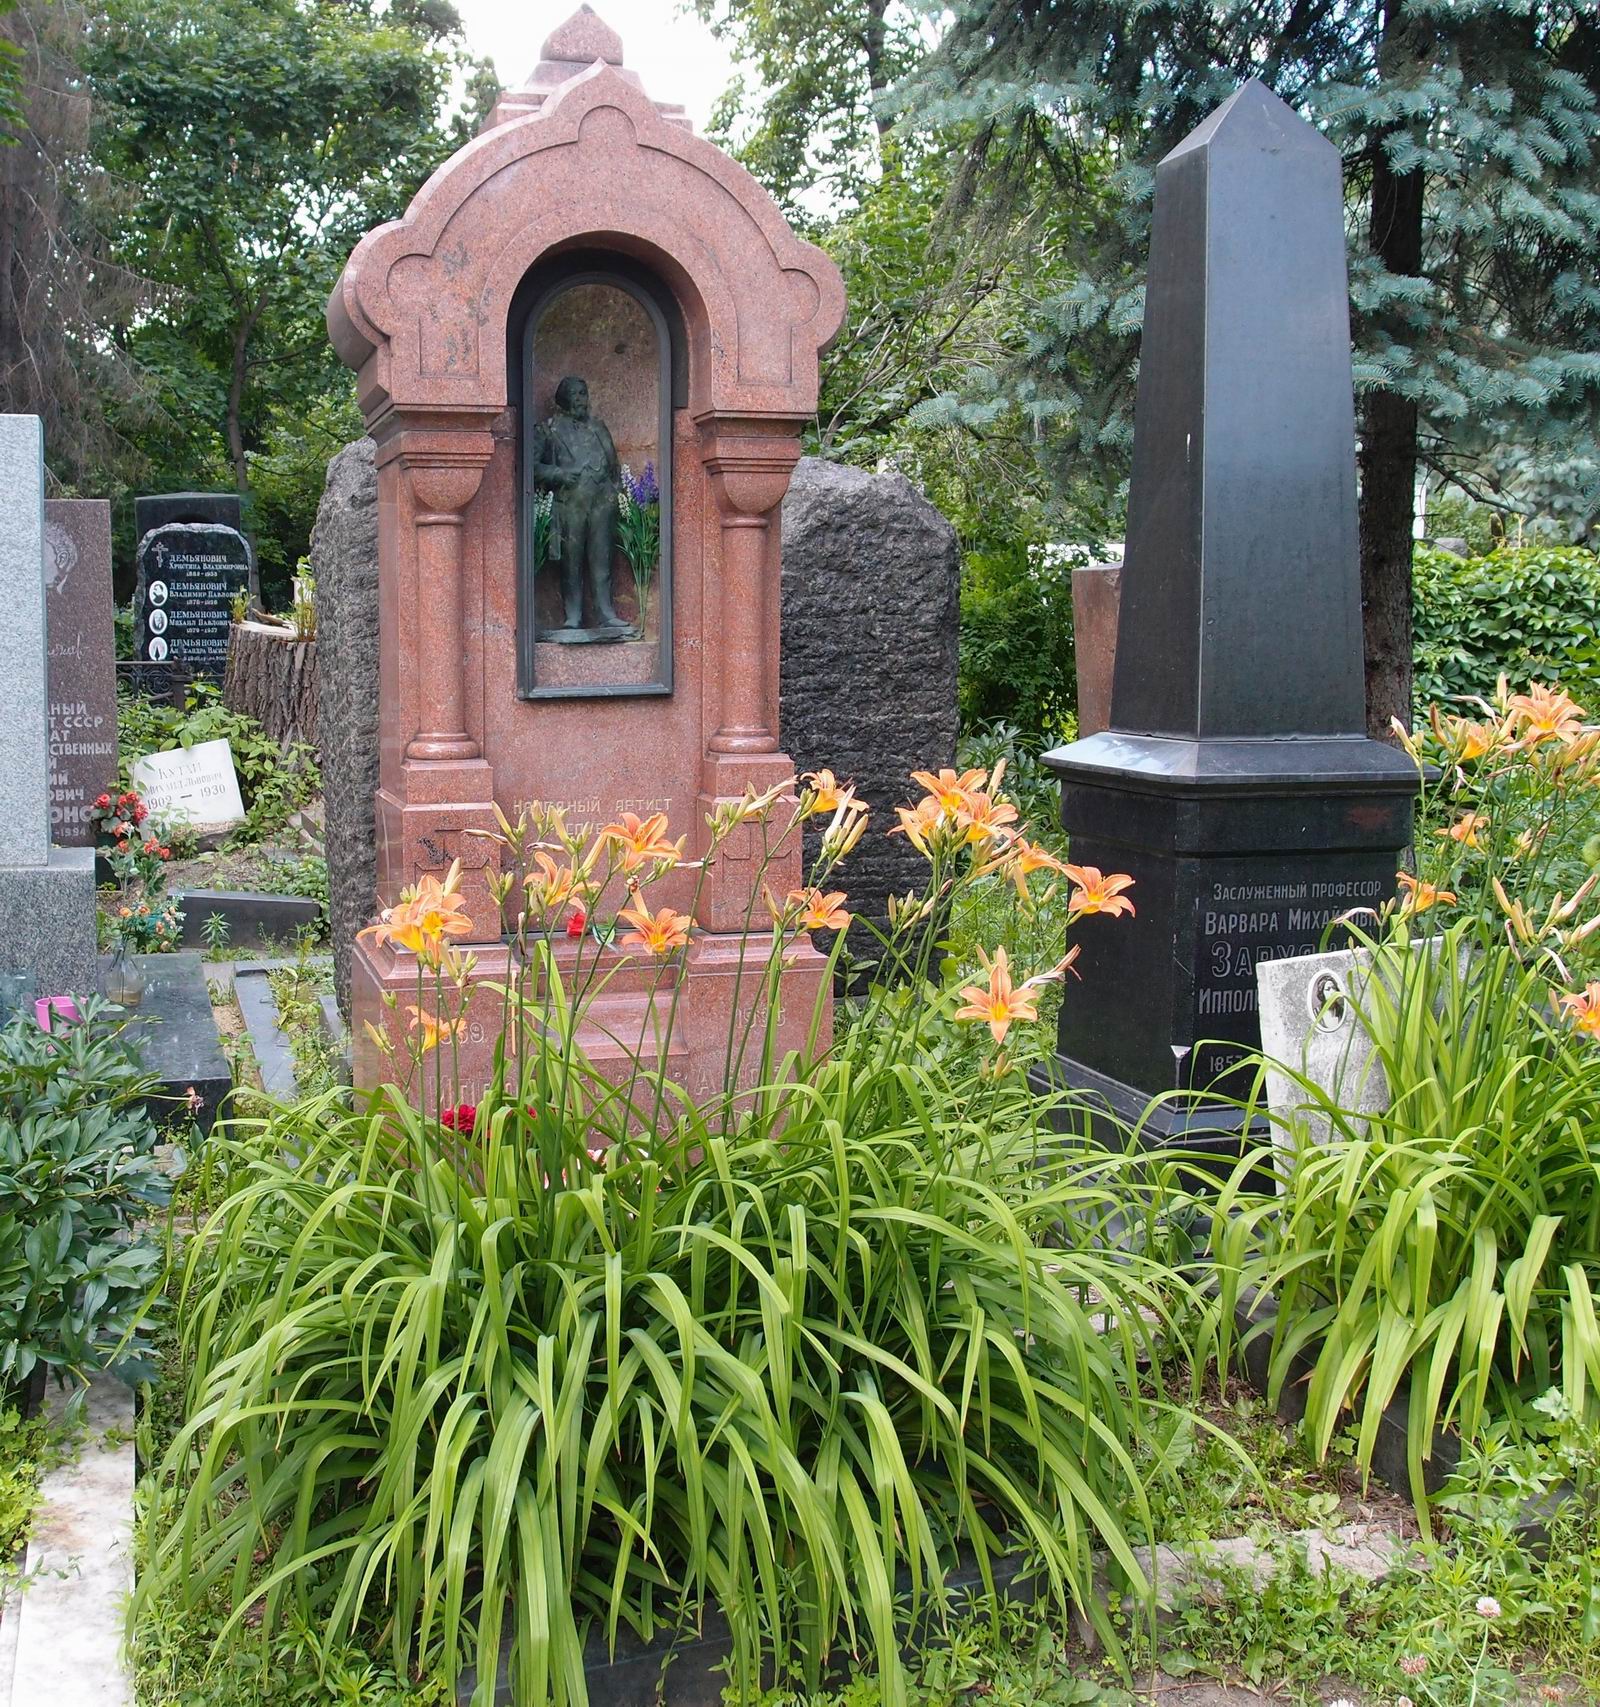 Памятник на могиле Ипполитова-Иванова М.М. (1859–1935), ск. С.Меркуров, на Новодевичьем кладбище (2–21а–7). Нажмите левую кнопку мыши, чтобы увидеть фрагмент памятника крупно.